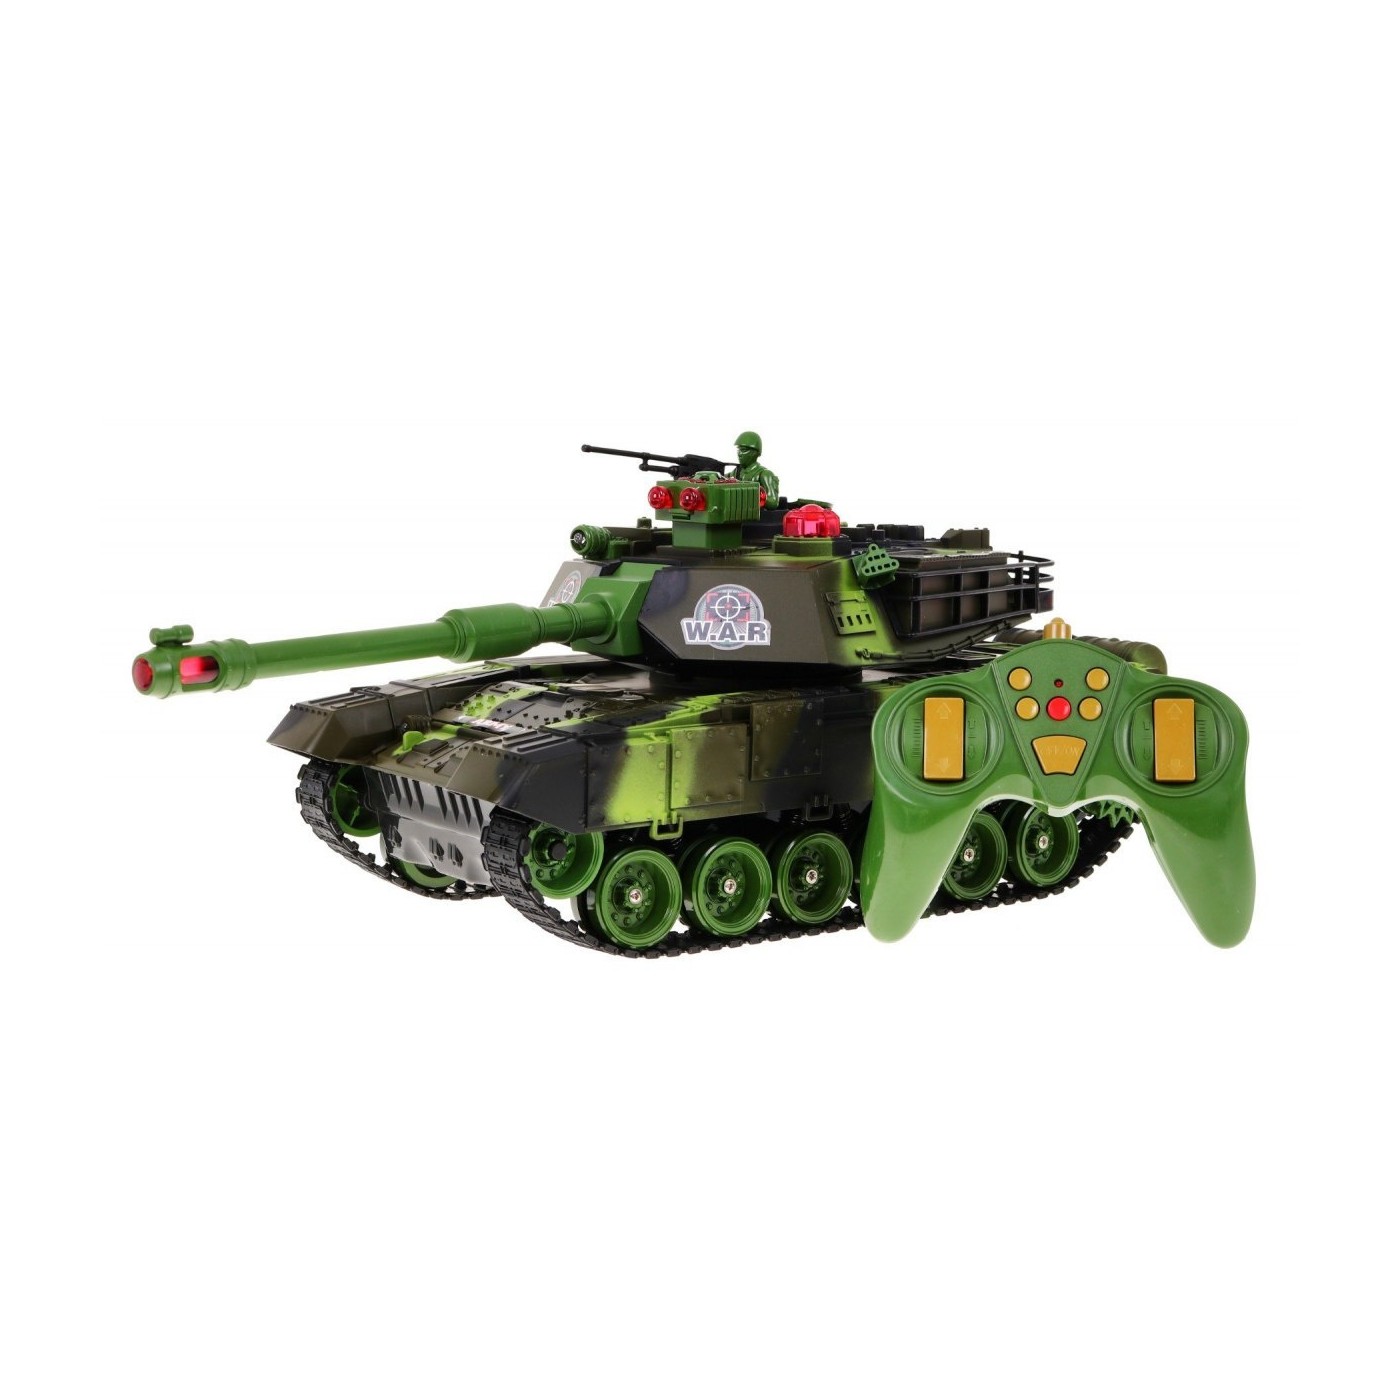 Zdalnie sterowany Czołg dla dzieci 3+ Zielony 1:18 + Pilot + Dźwięki + LED + Ruchome elementy